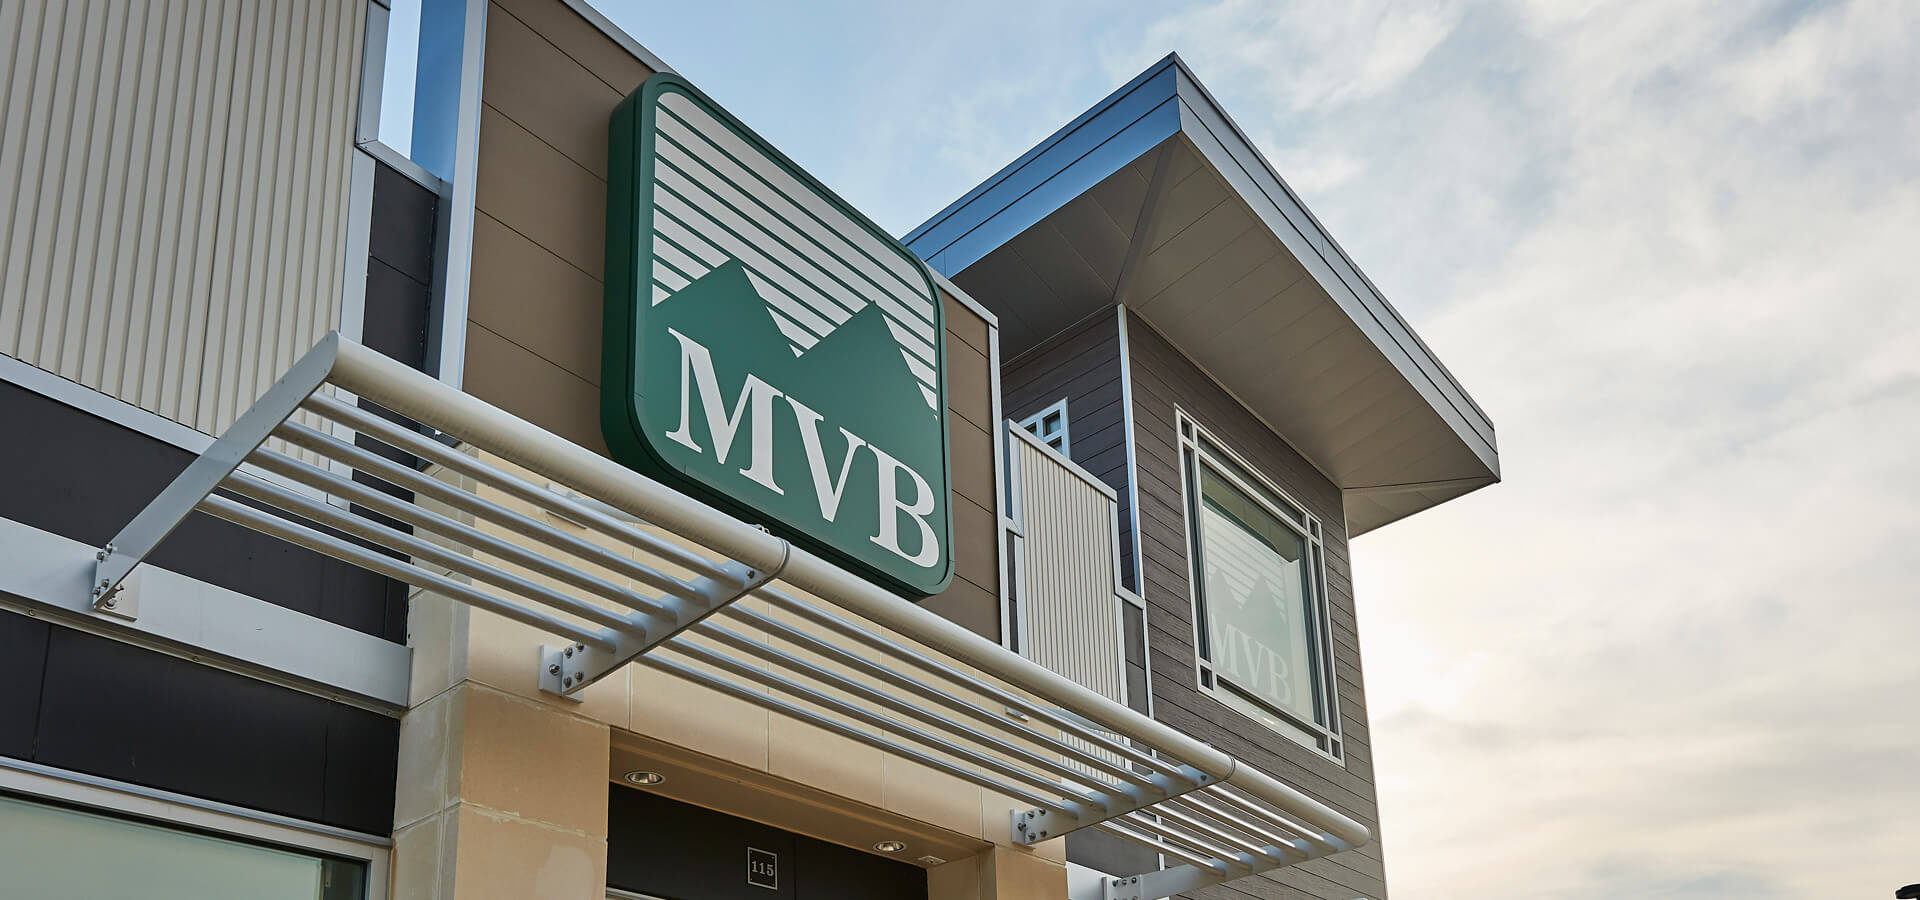 MVB branch outside